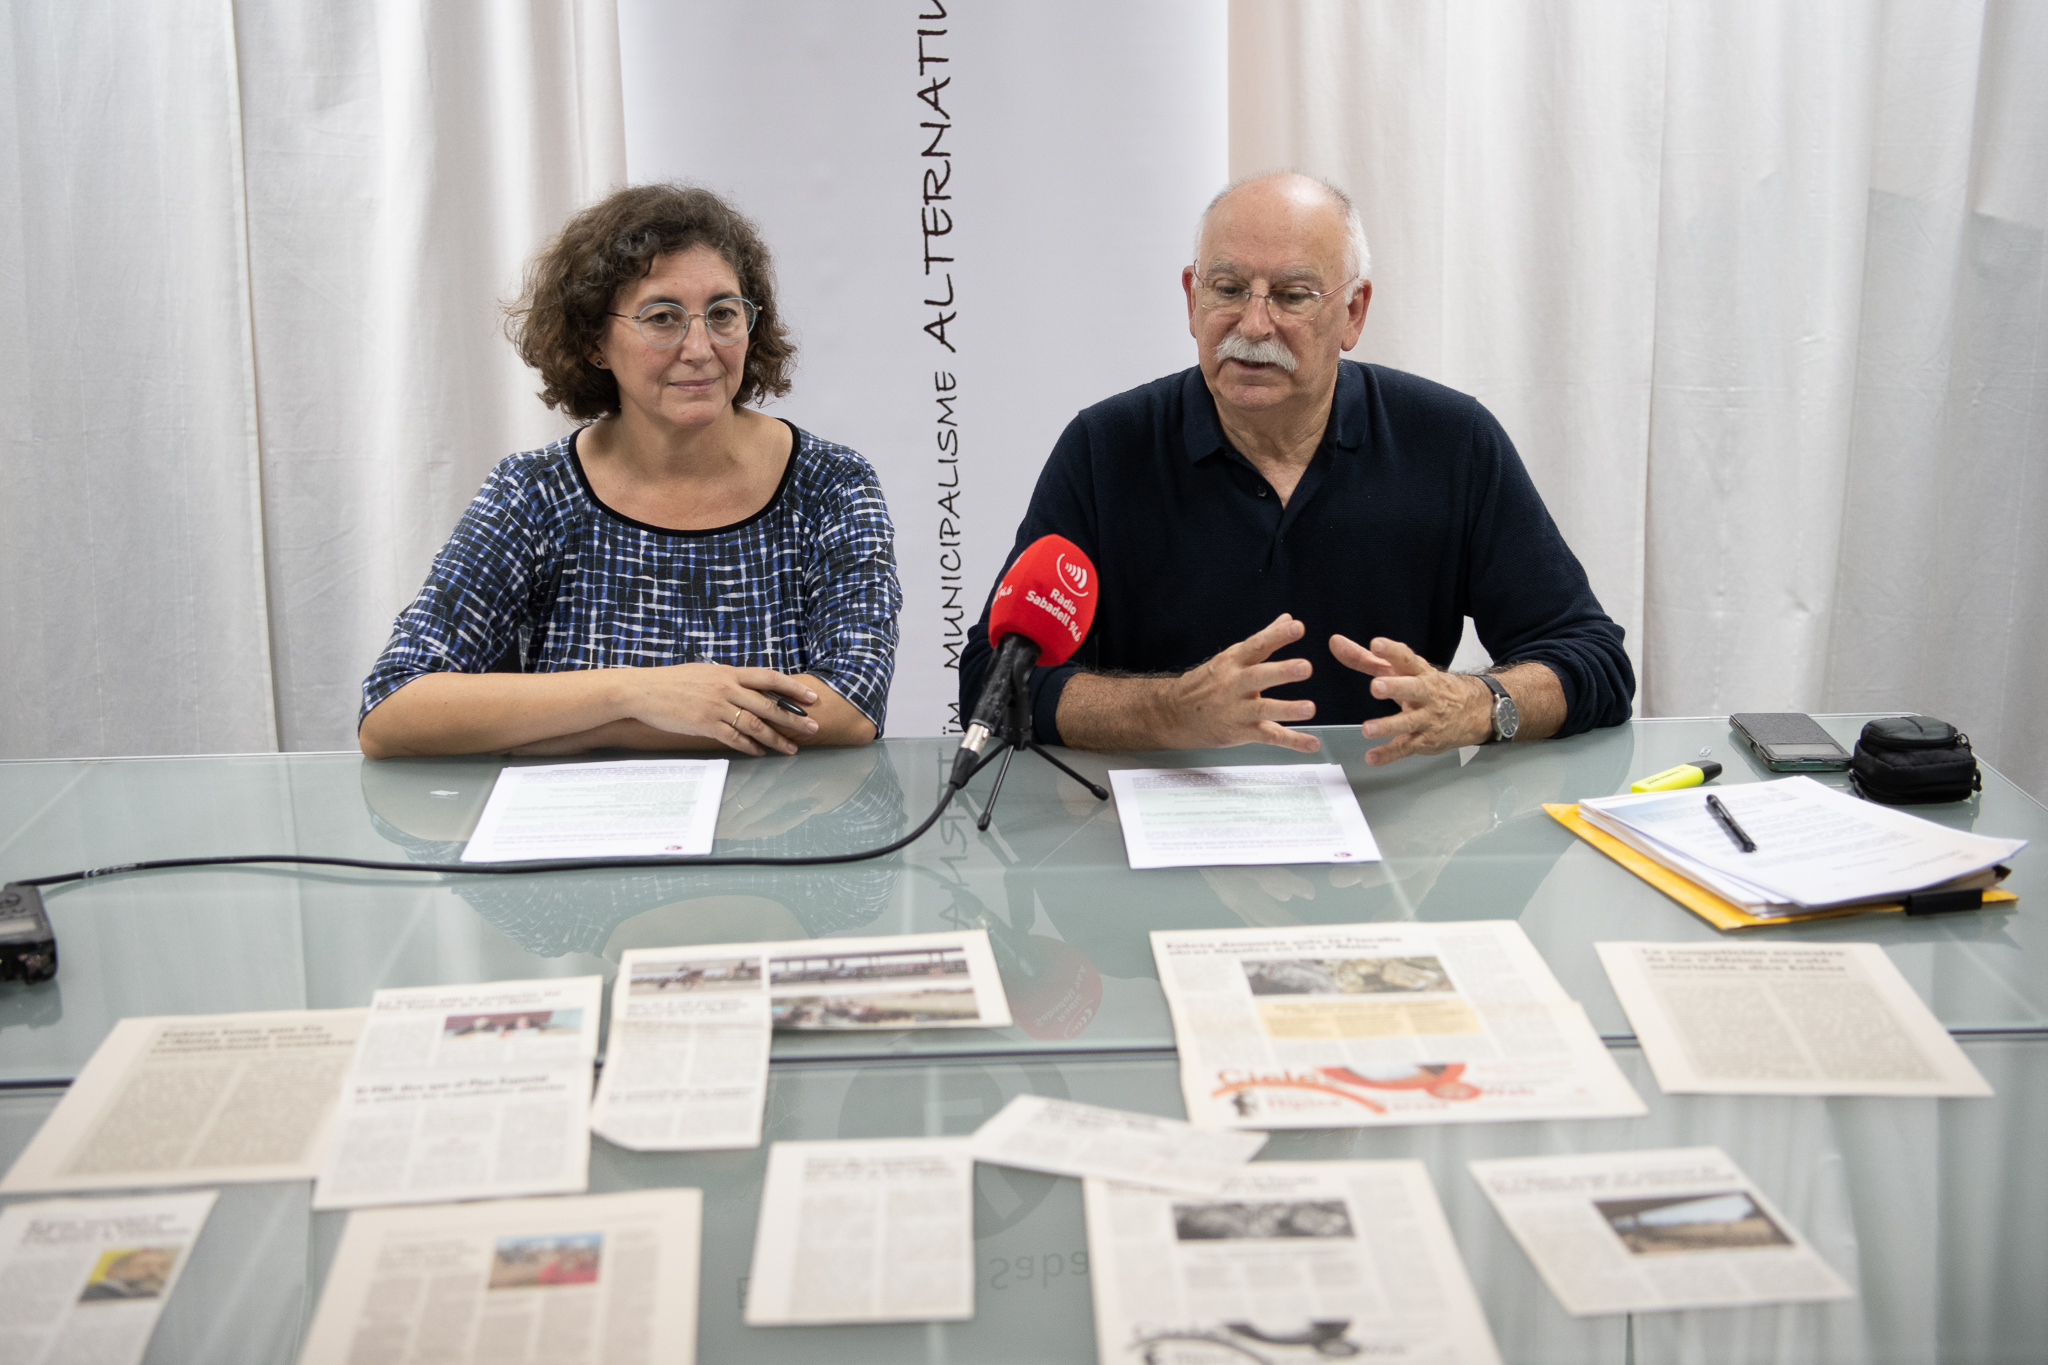 Virgínia Domínguez i Isidre Soler a la roda de premsa d'avui | Roger Benet